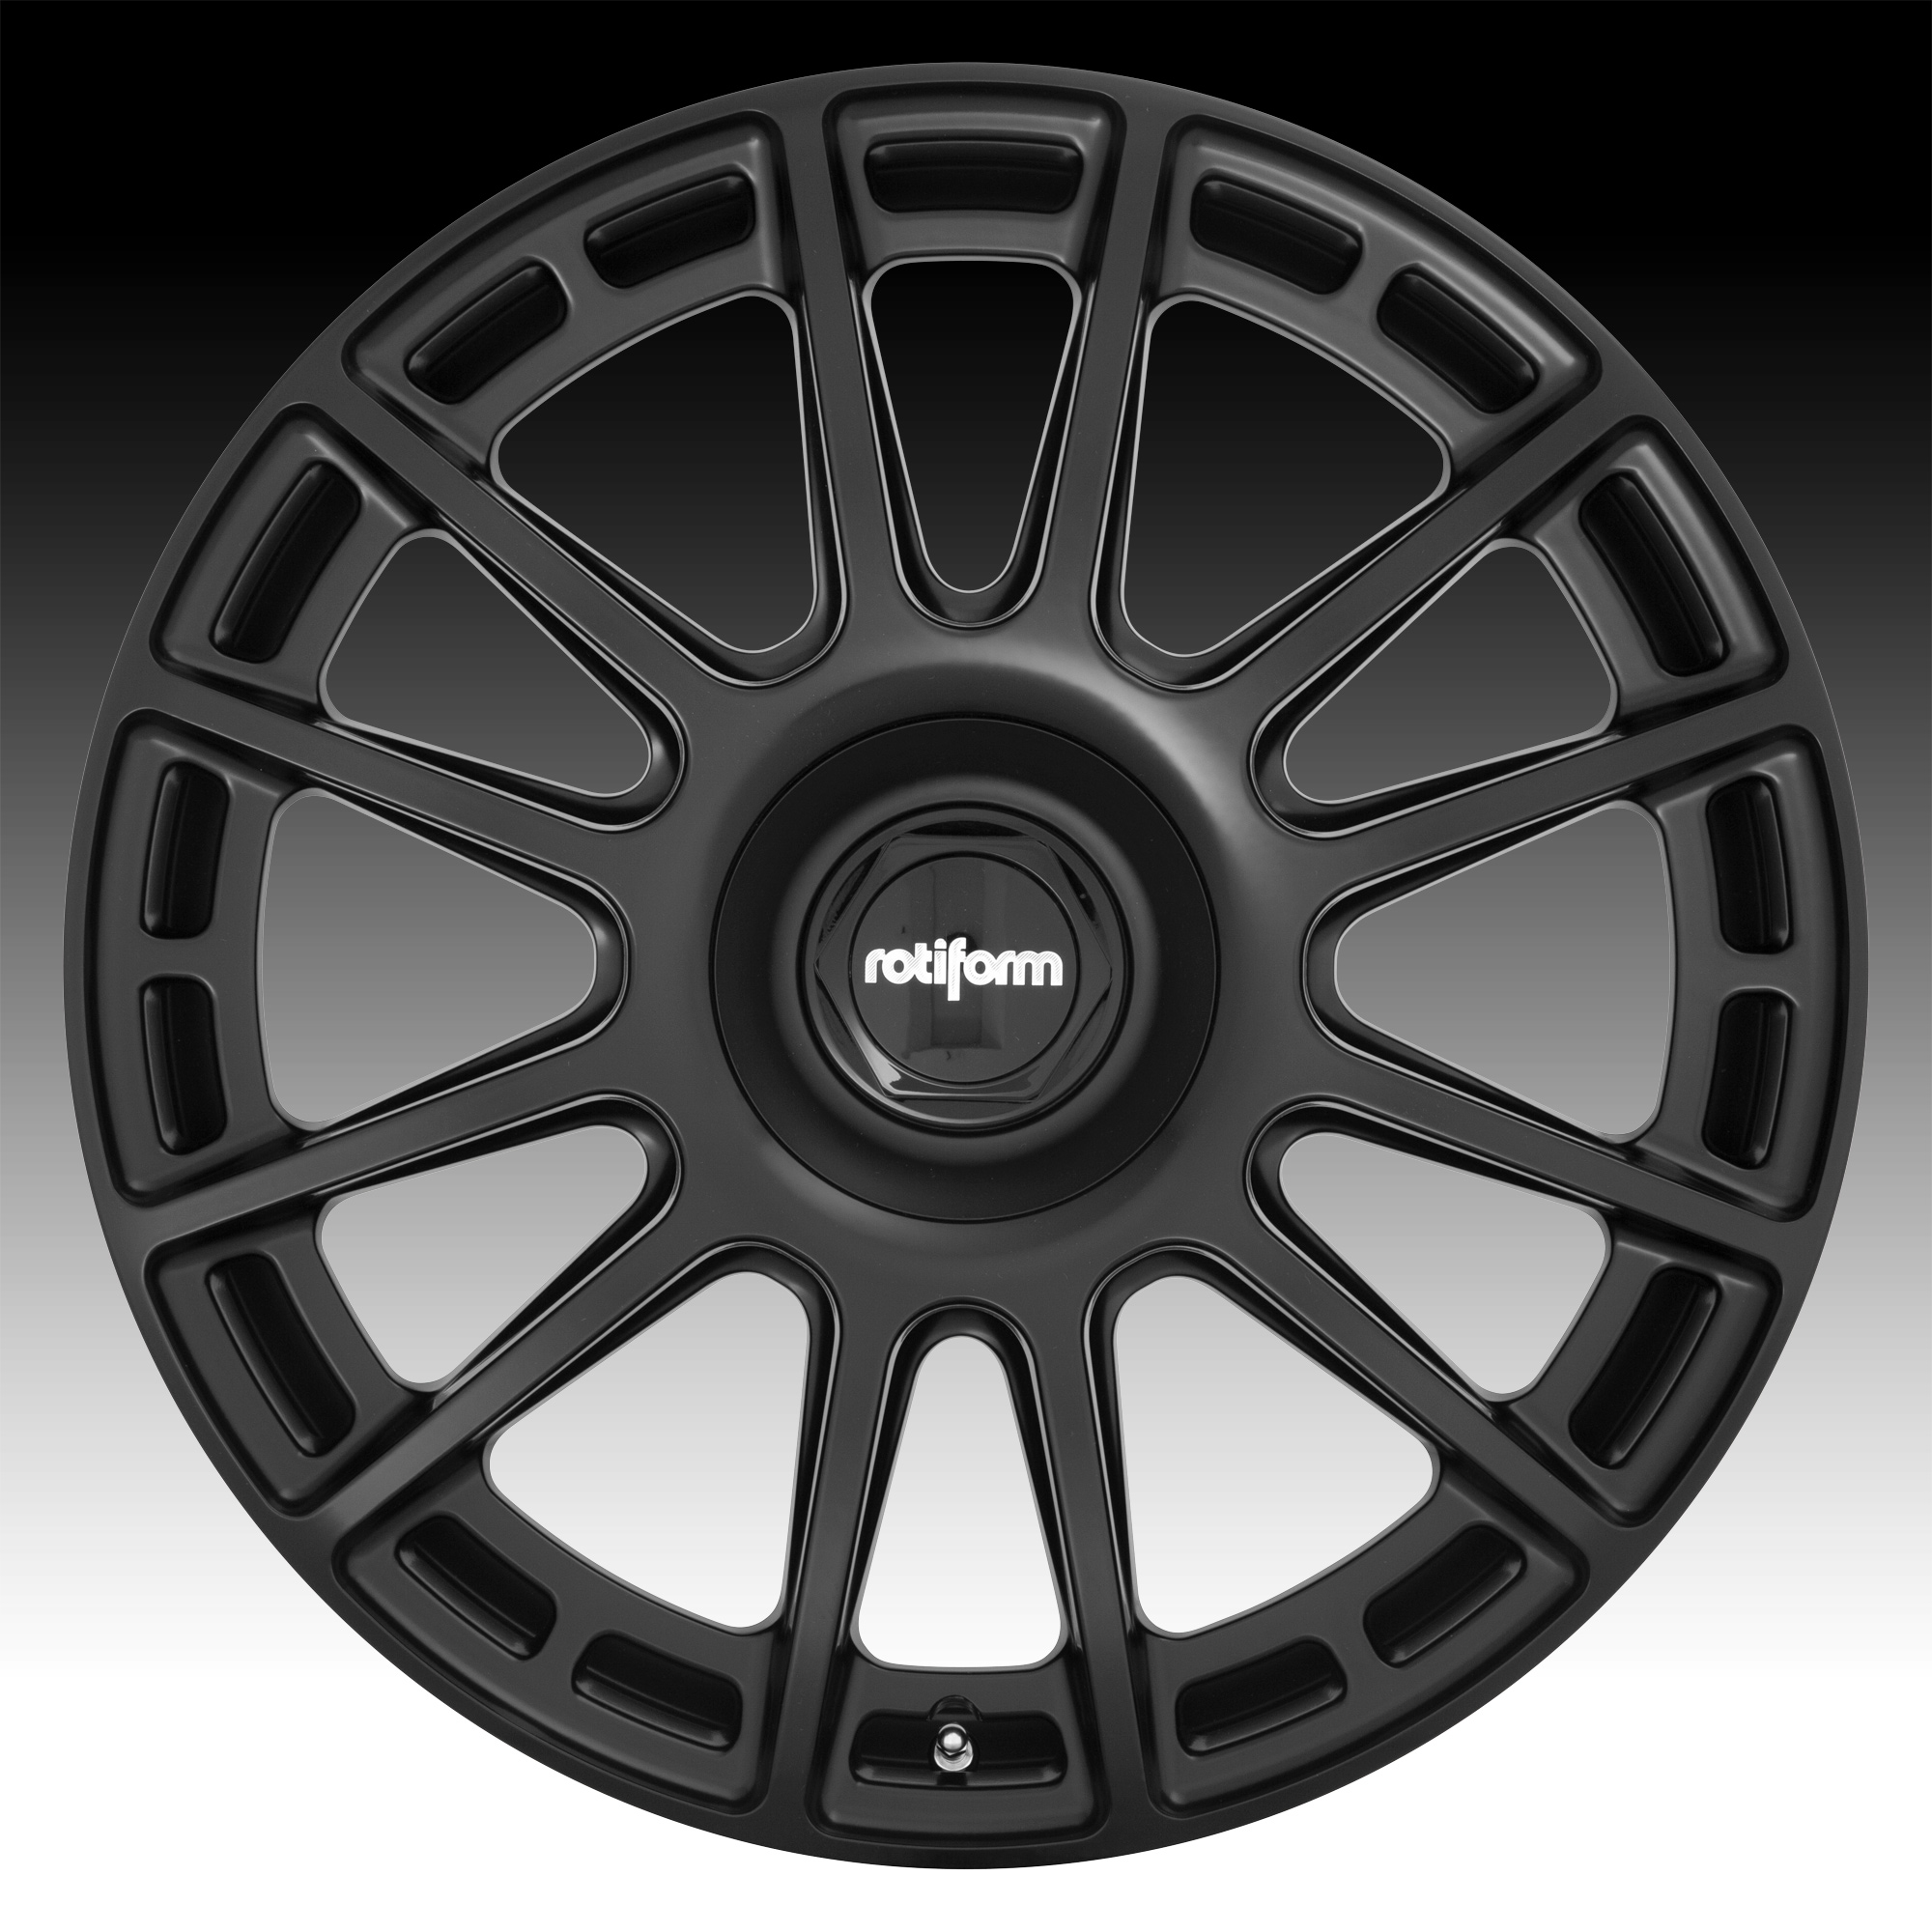 Rotiform Ozr R159 Matte Black Custom Wheels Rims Ozr R159